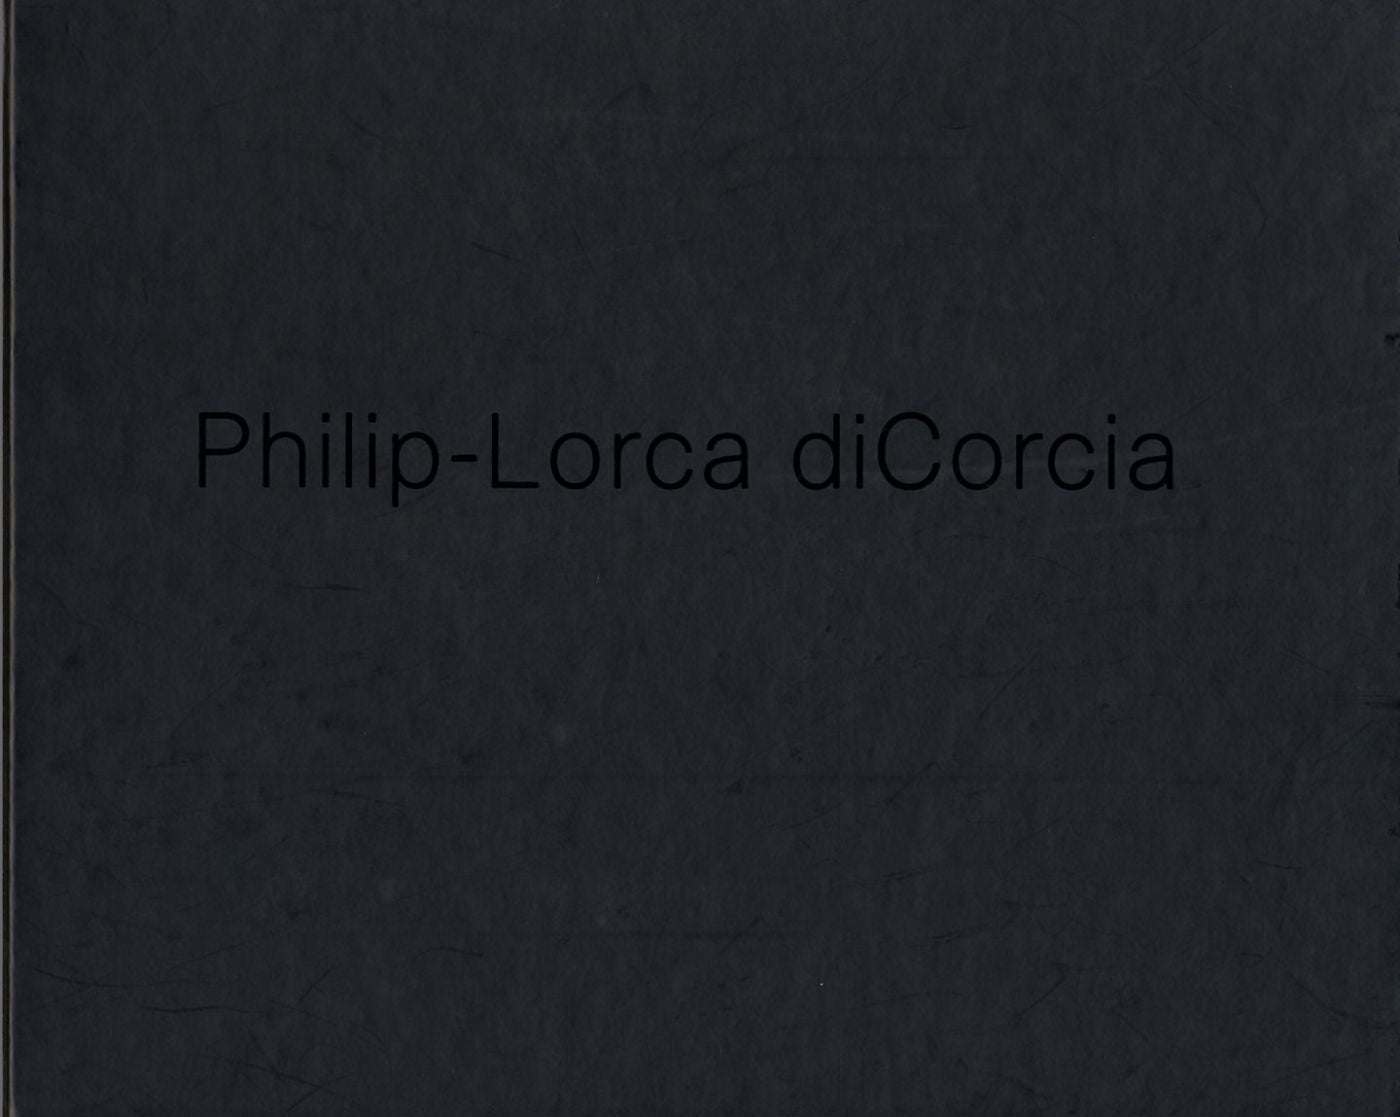 Philip-Lorca diCorcia: ¿Cómo nos vemos?